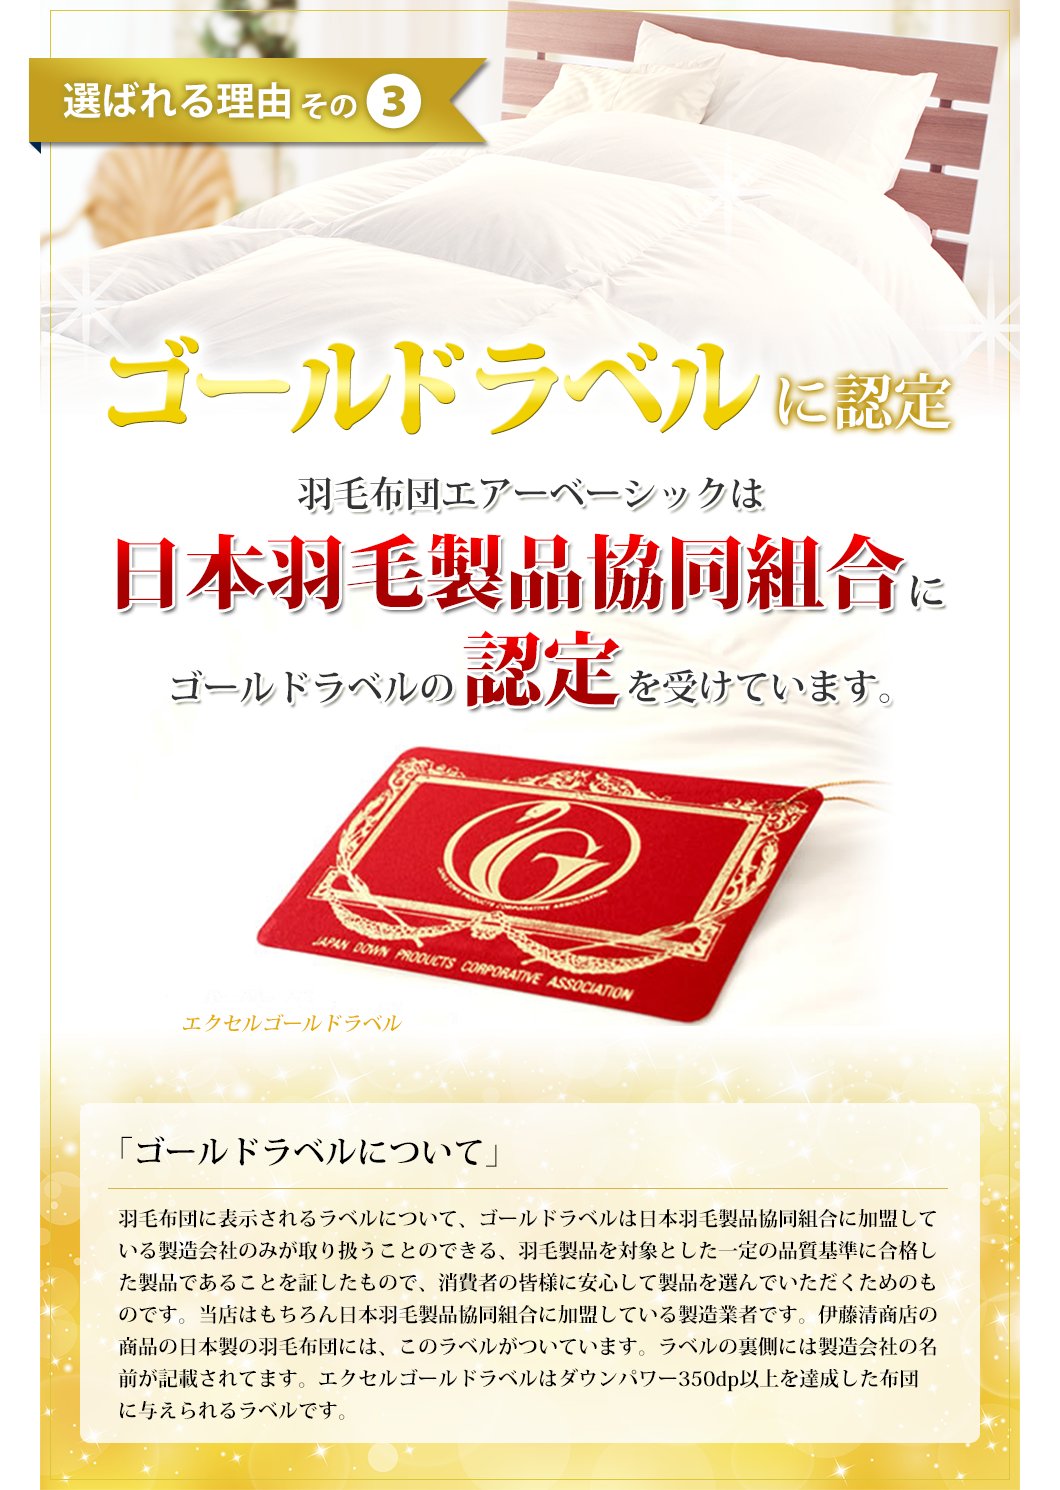 選ばれる理由その３　羽毛布団エアーベーシックはエクセルゴールドラベル認定を受けた商品です。日本羽毛製品共同組合に正式にエクセルゴールドラベル認定を受けています。